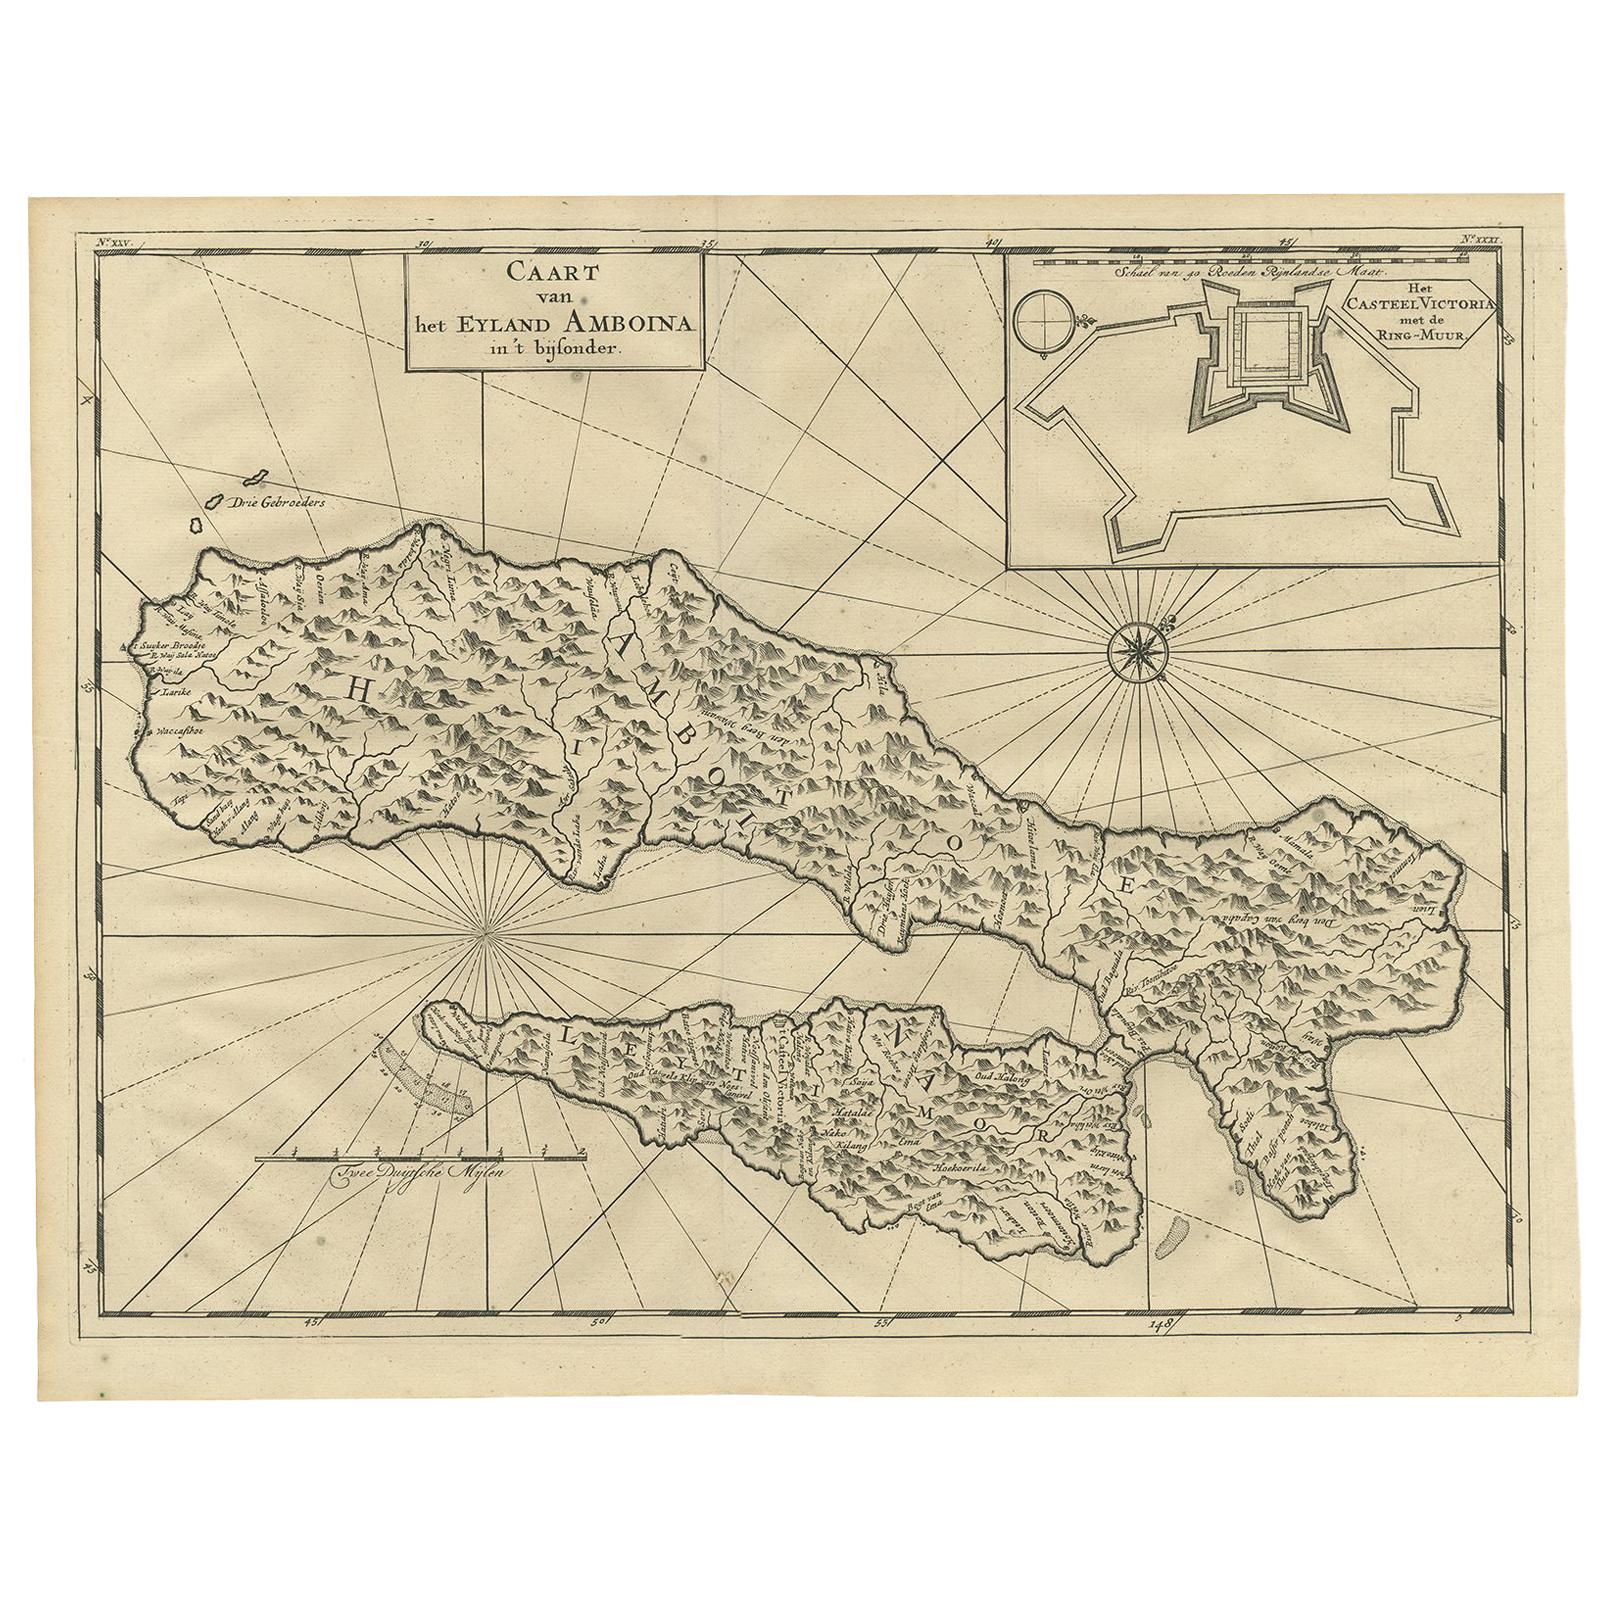 Carte ancienne de l'île d' Ambon par Valentijn, 1726